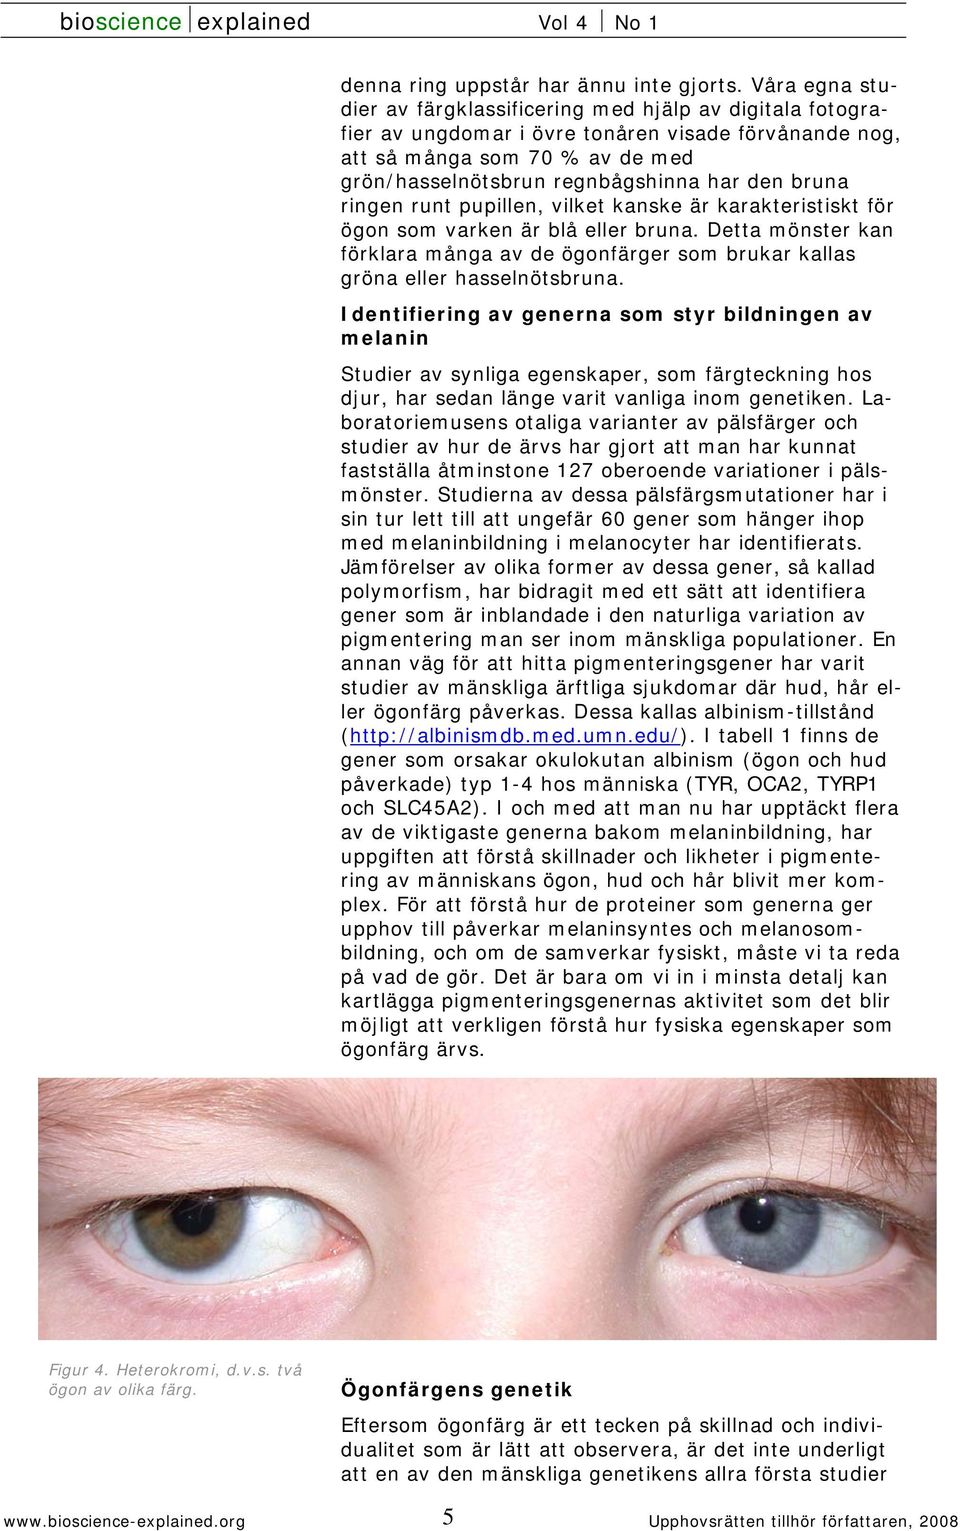 bruna ringen runt pupillen, vilket kanske är karakteristiskt för ögon som varken är blå eller bruna. Detta mönster kan förklara många av de ögonfärger som brukar kallas gröna eller hasselnötsbruna.